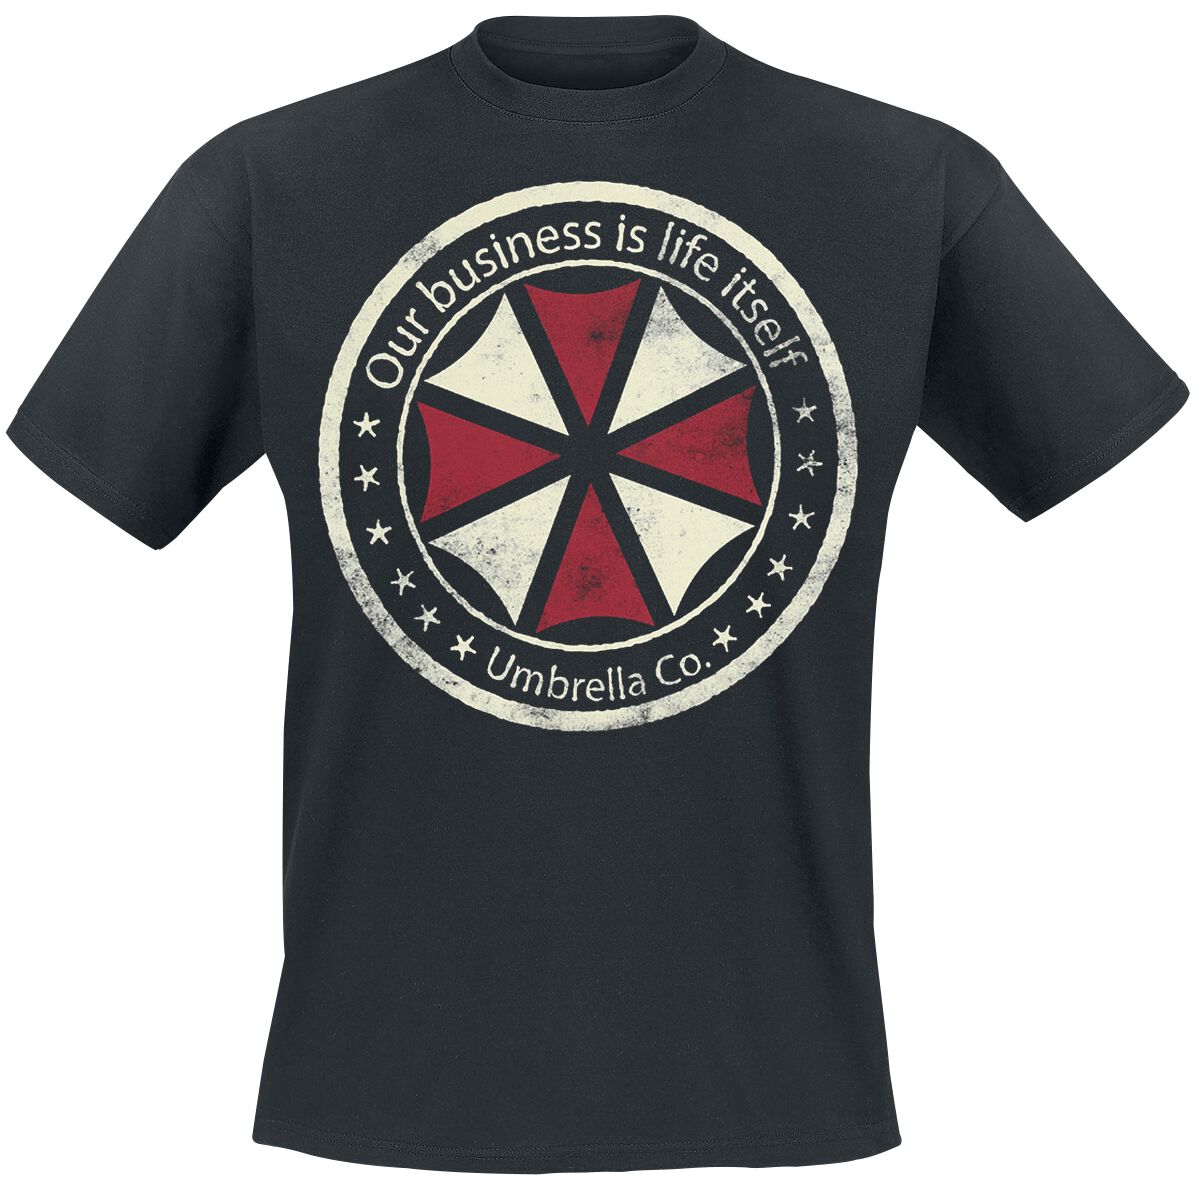 Resident Evil - Gaming T-Shirt - Umbrella Co. - Our Business Is Life Itself - S bis XXL - für Männer - Größe M - schwarz